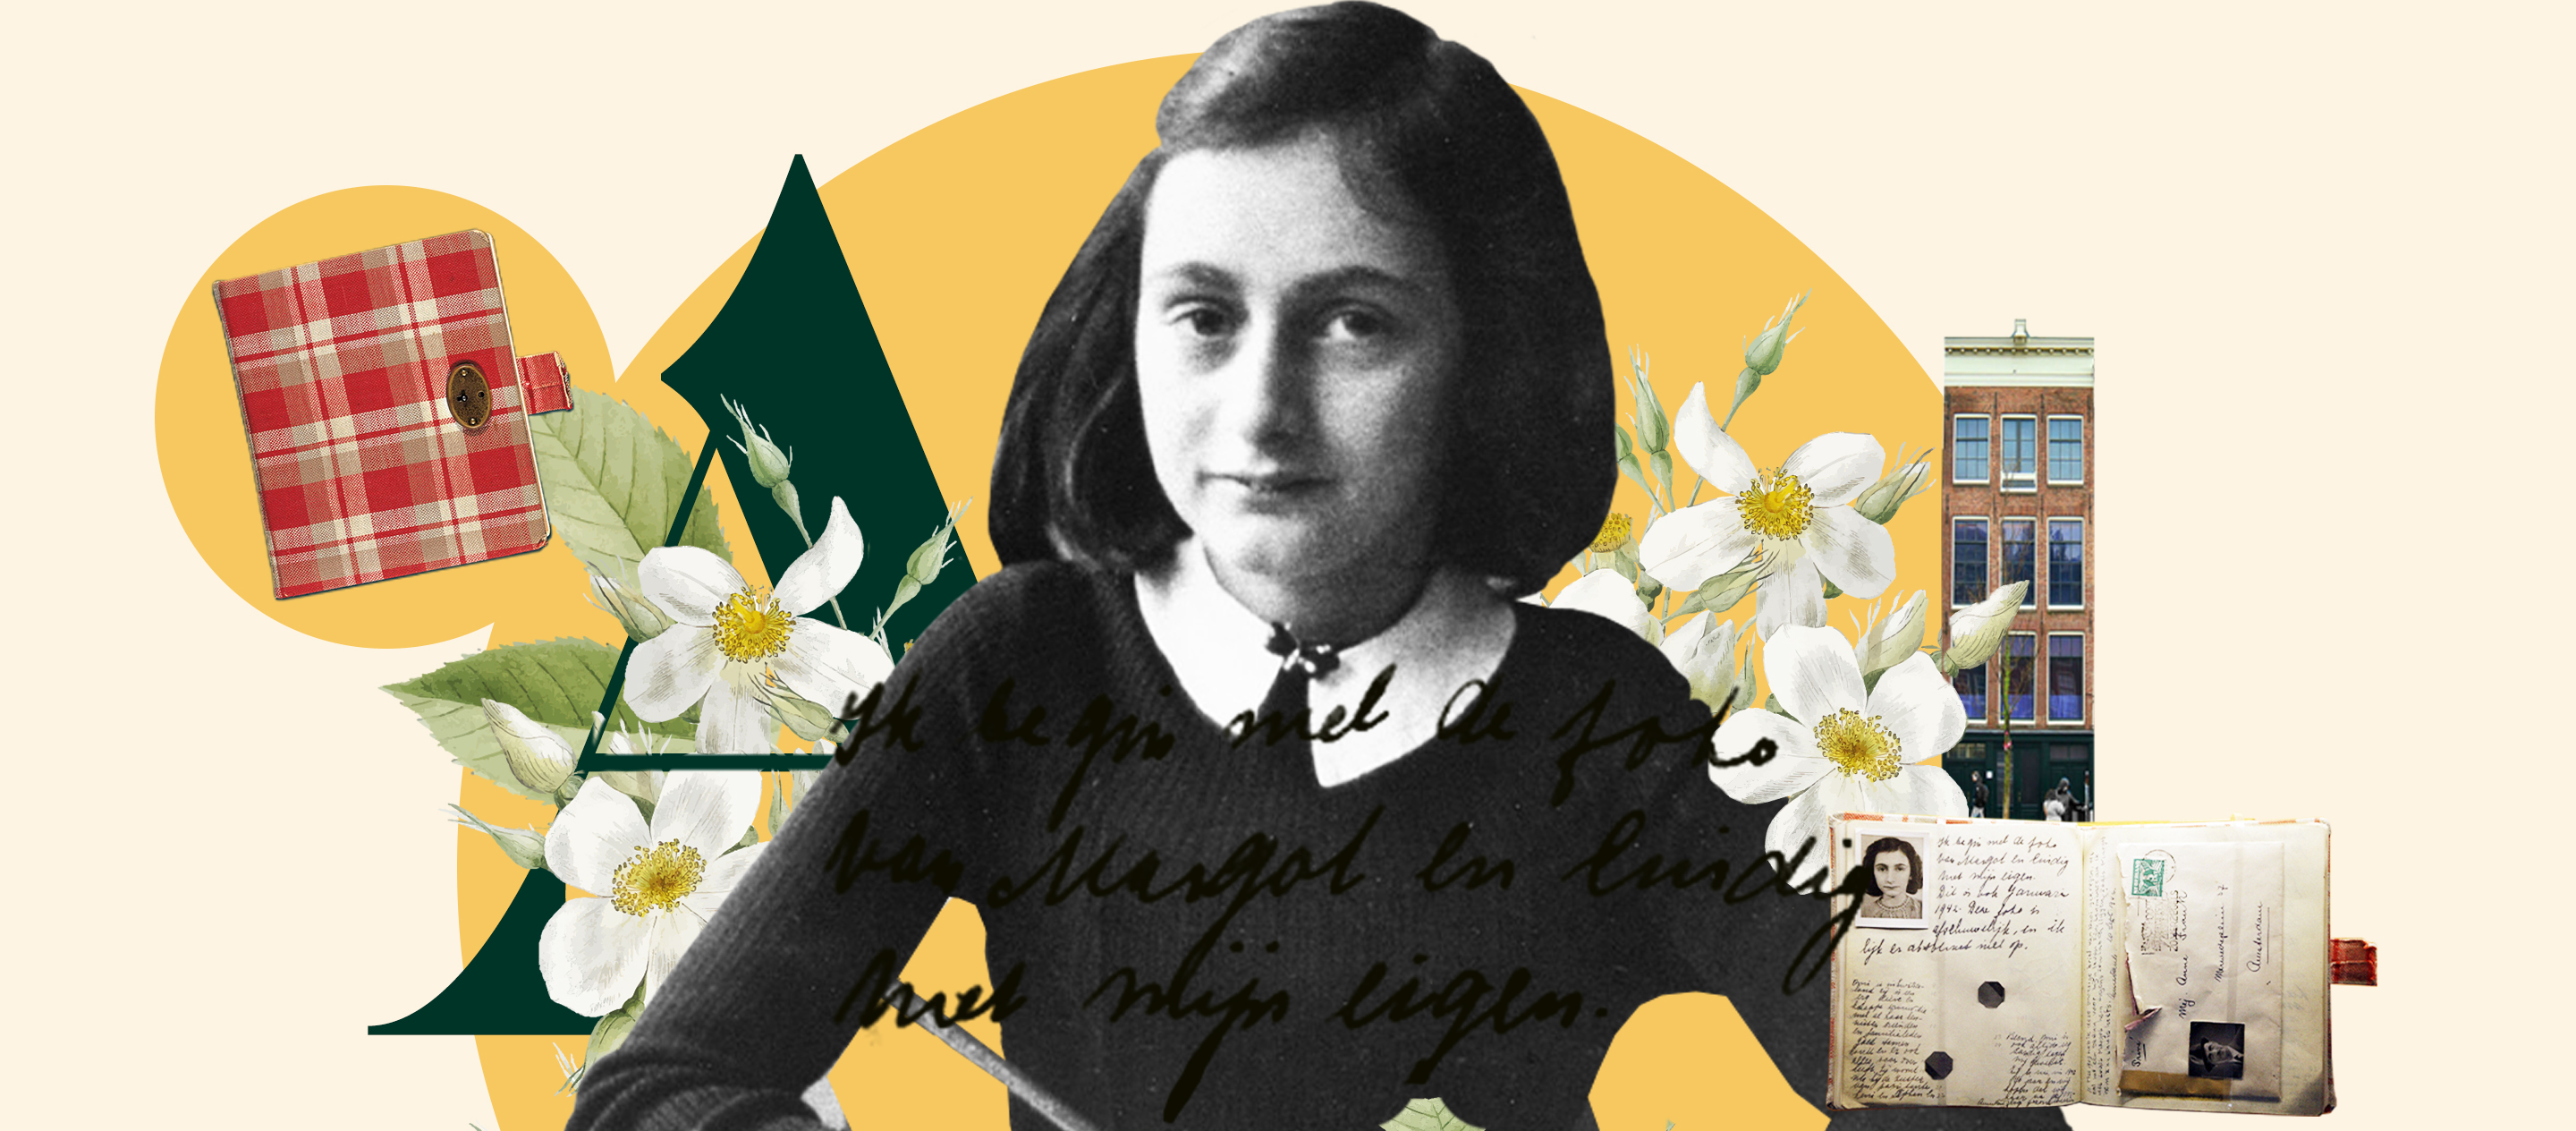 อดีต | ของ | ปัจจุบัน EP.13 Anne Frank’s Diary ใครคือคนที่ทรยศครอบครัวแอนน์ แฟรงค์?